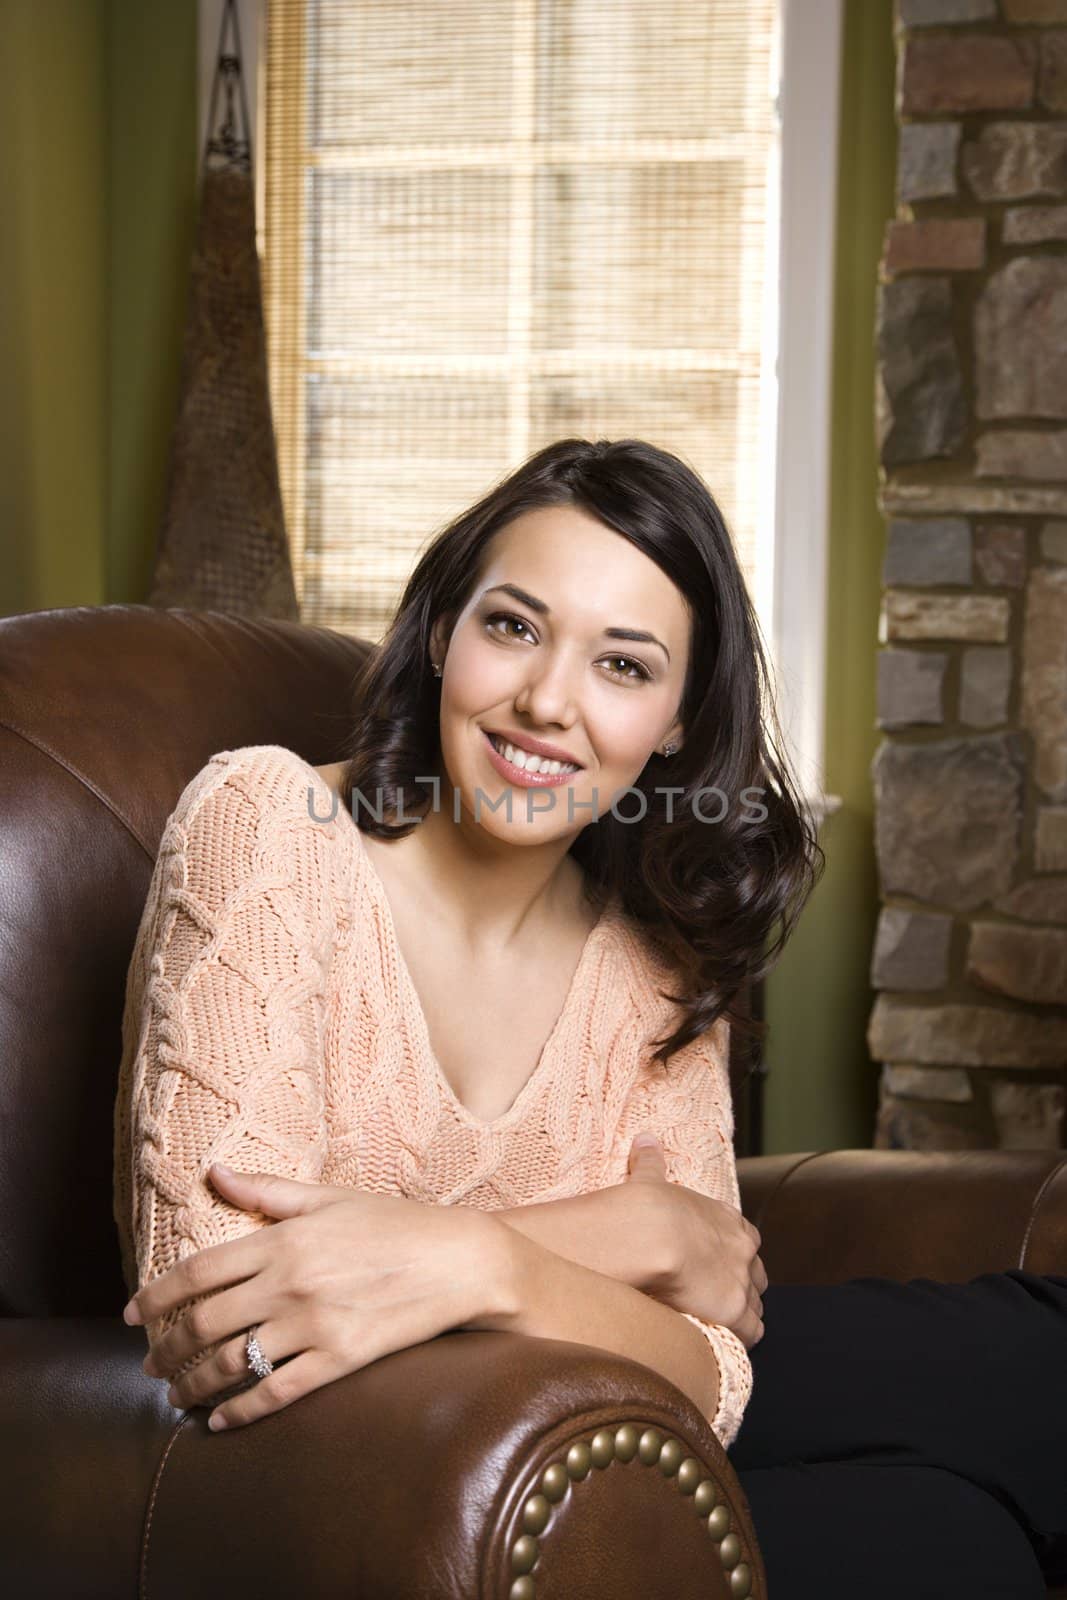 Pretty smiling woman. by iofoto